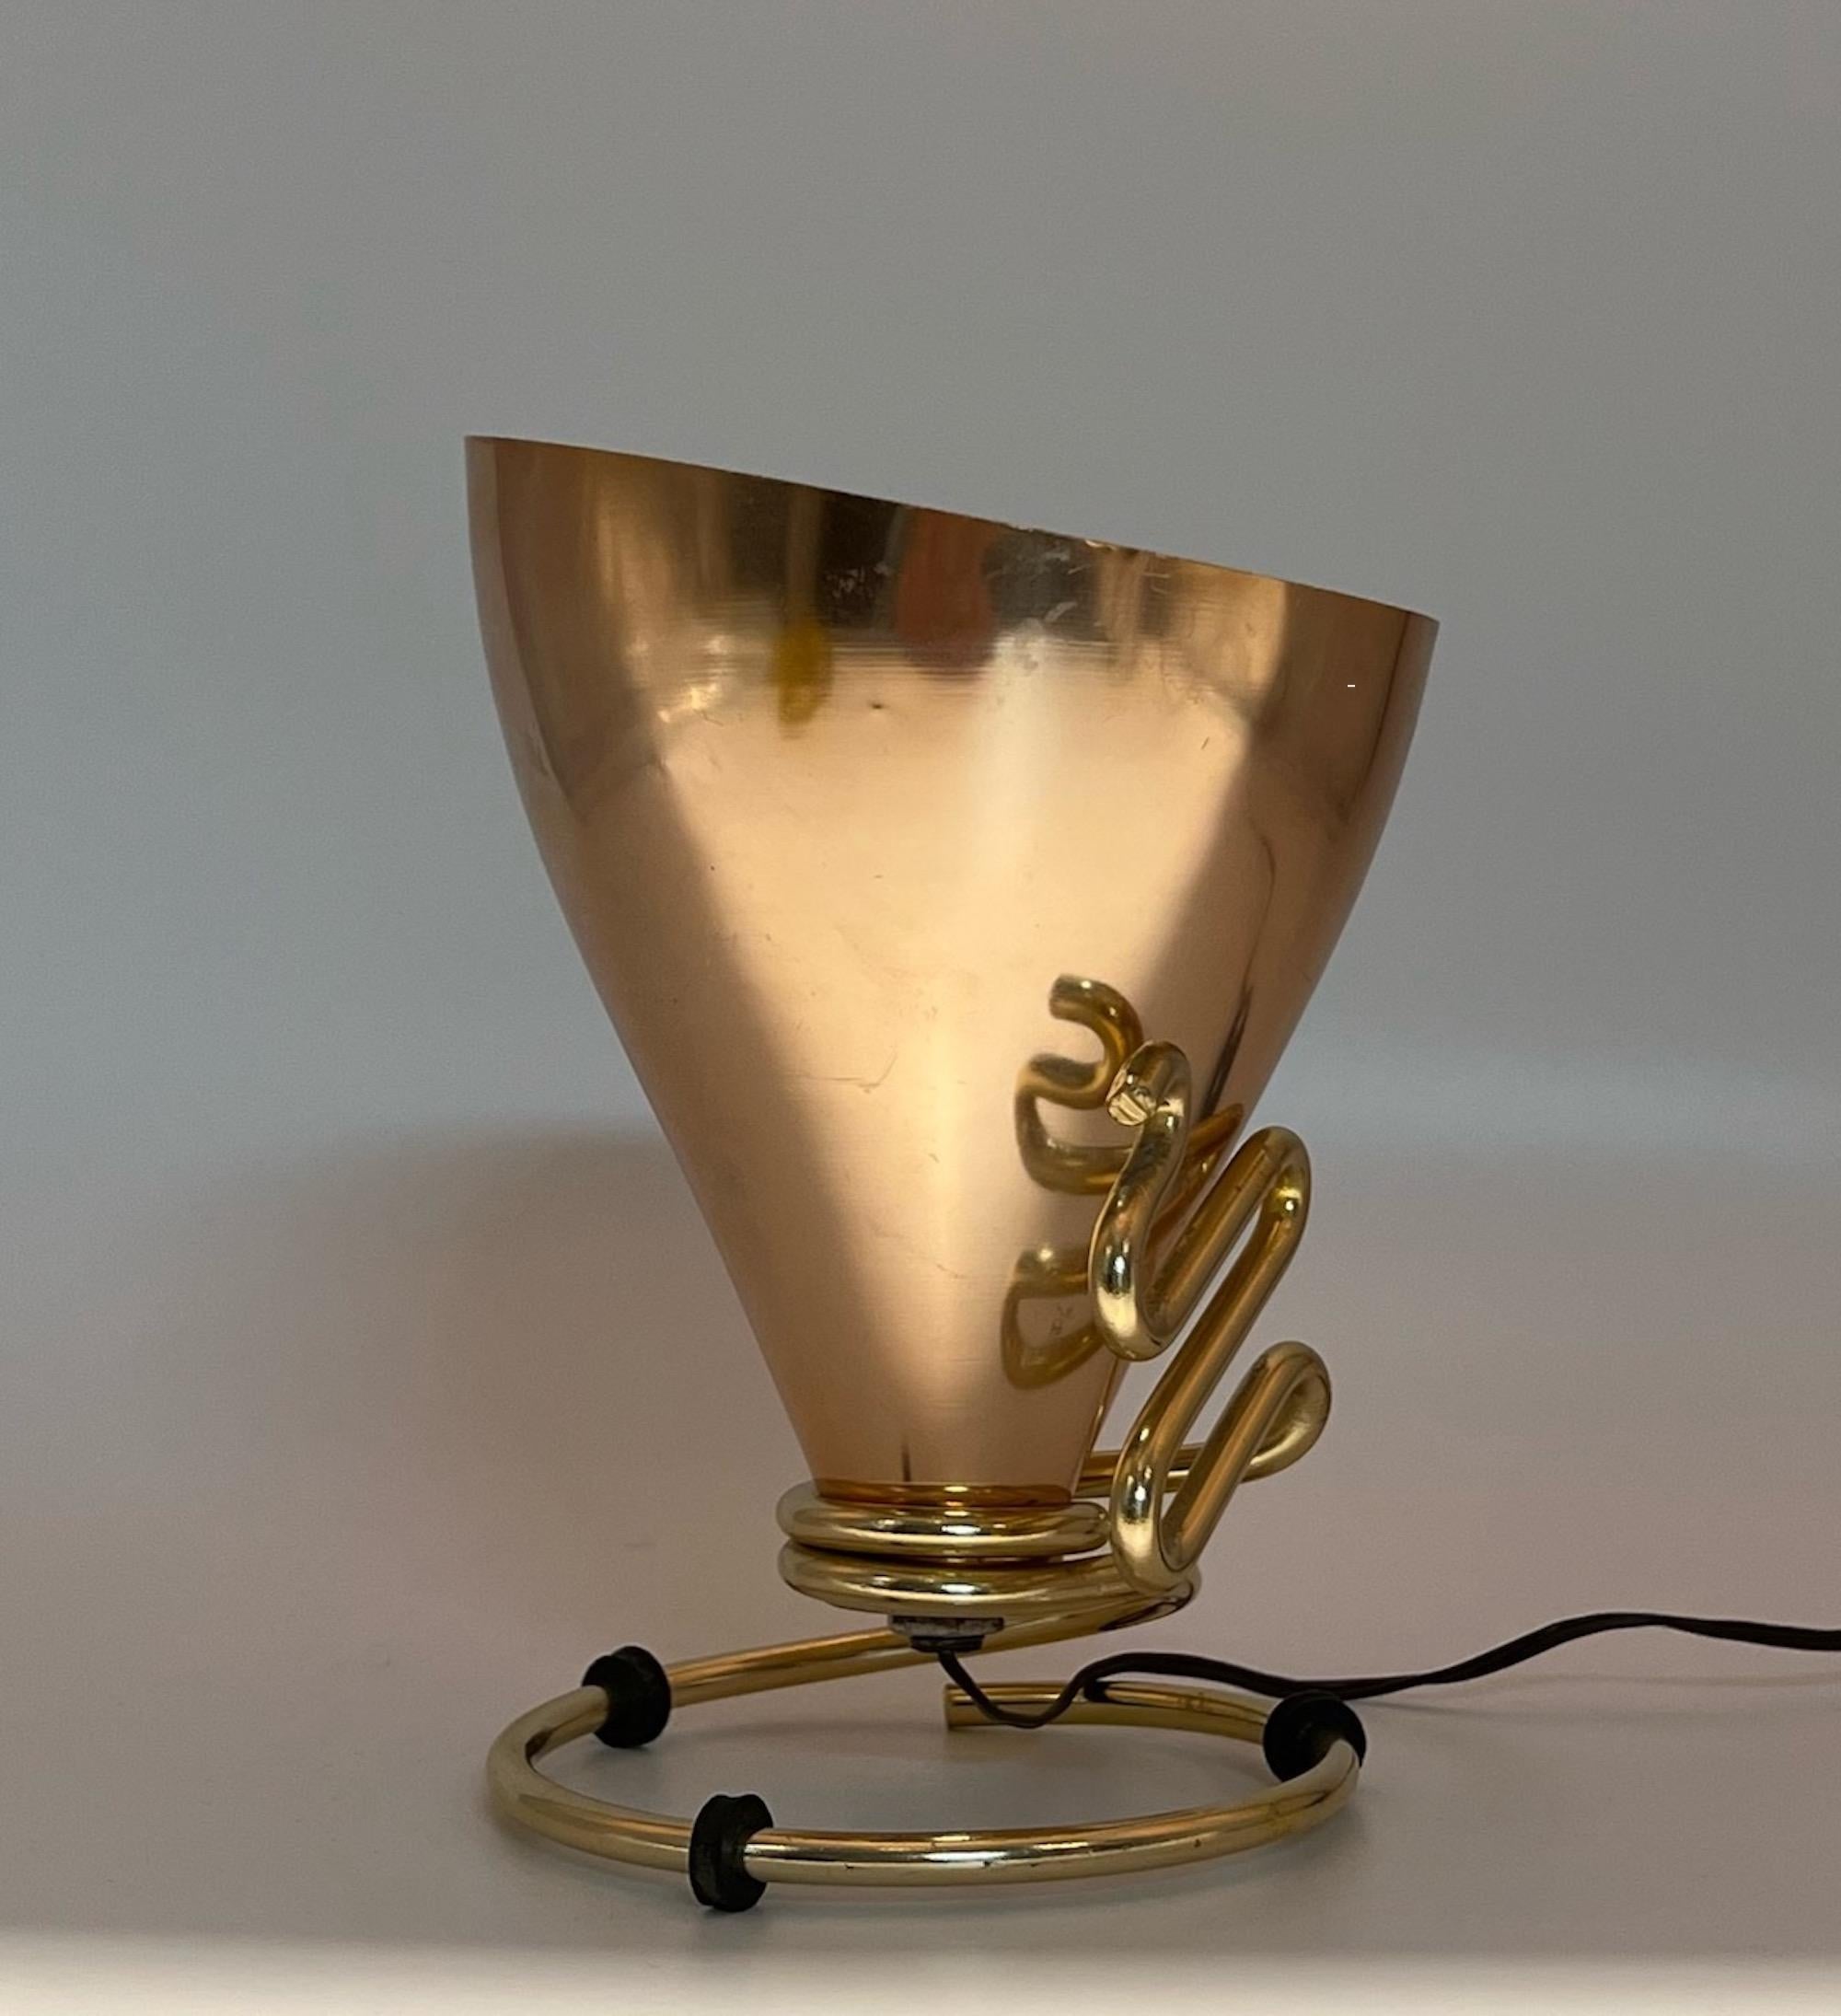 Seltene und ikonische Lampe, die von dem kreativen Genie Ettore Sottsass entworfen und von Rinnovel hergestellt wurde.

Unverwechselbarer konischer Lampenschirm aus Aluminium mit einer glänzenden goldenen Farbe, getragen von einem Metallrahmen, der